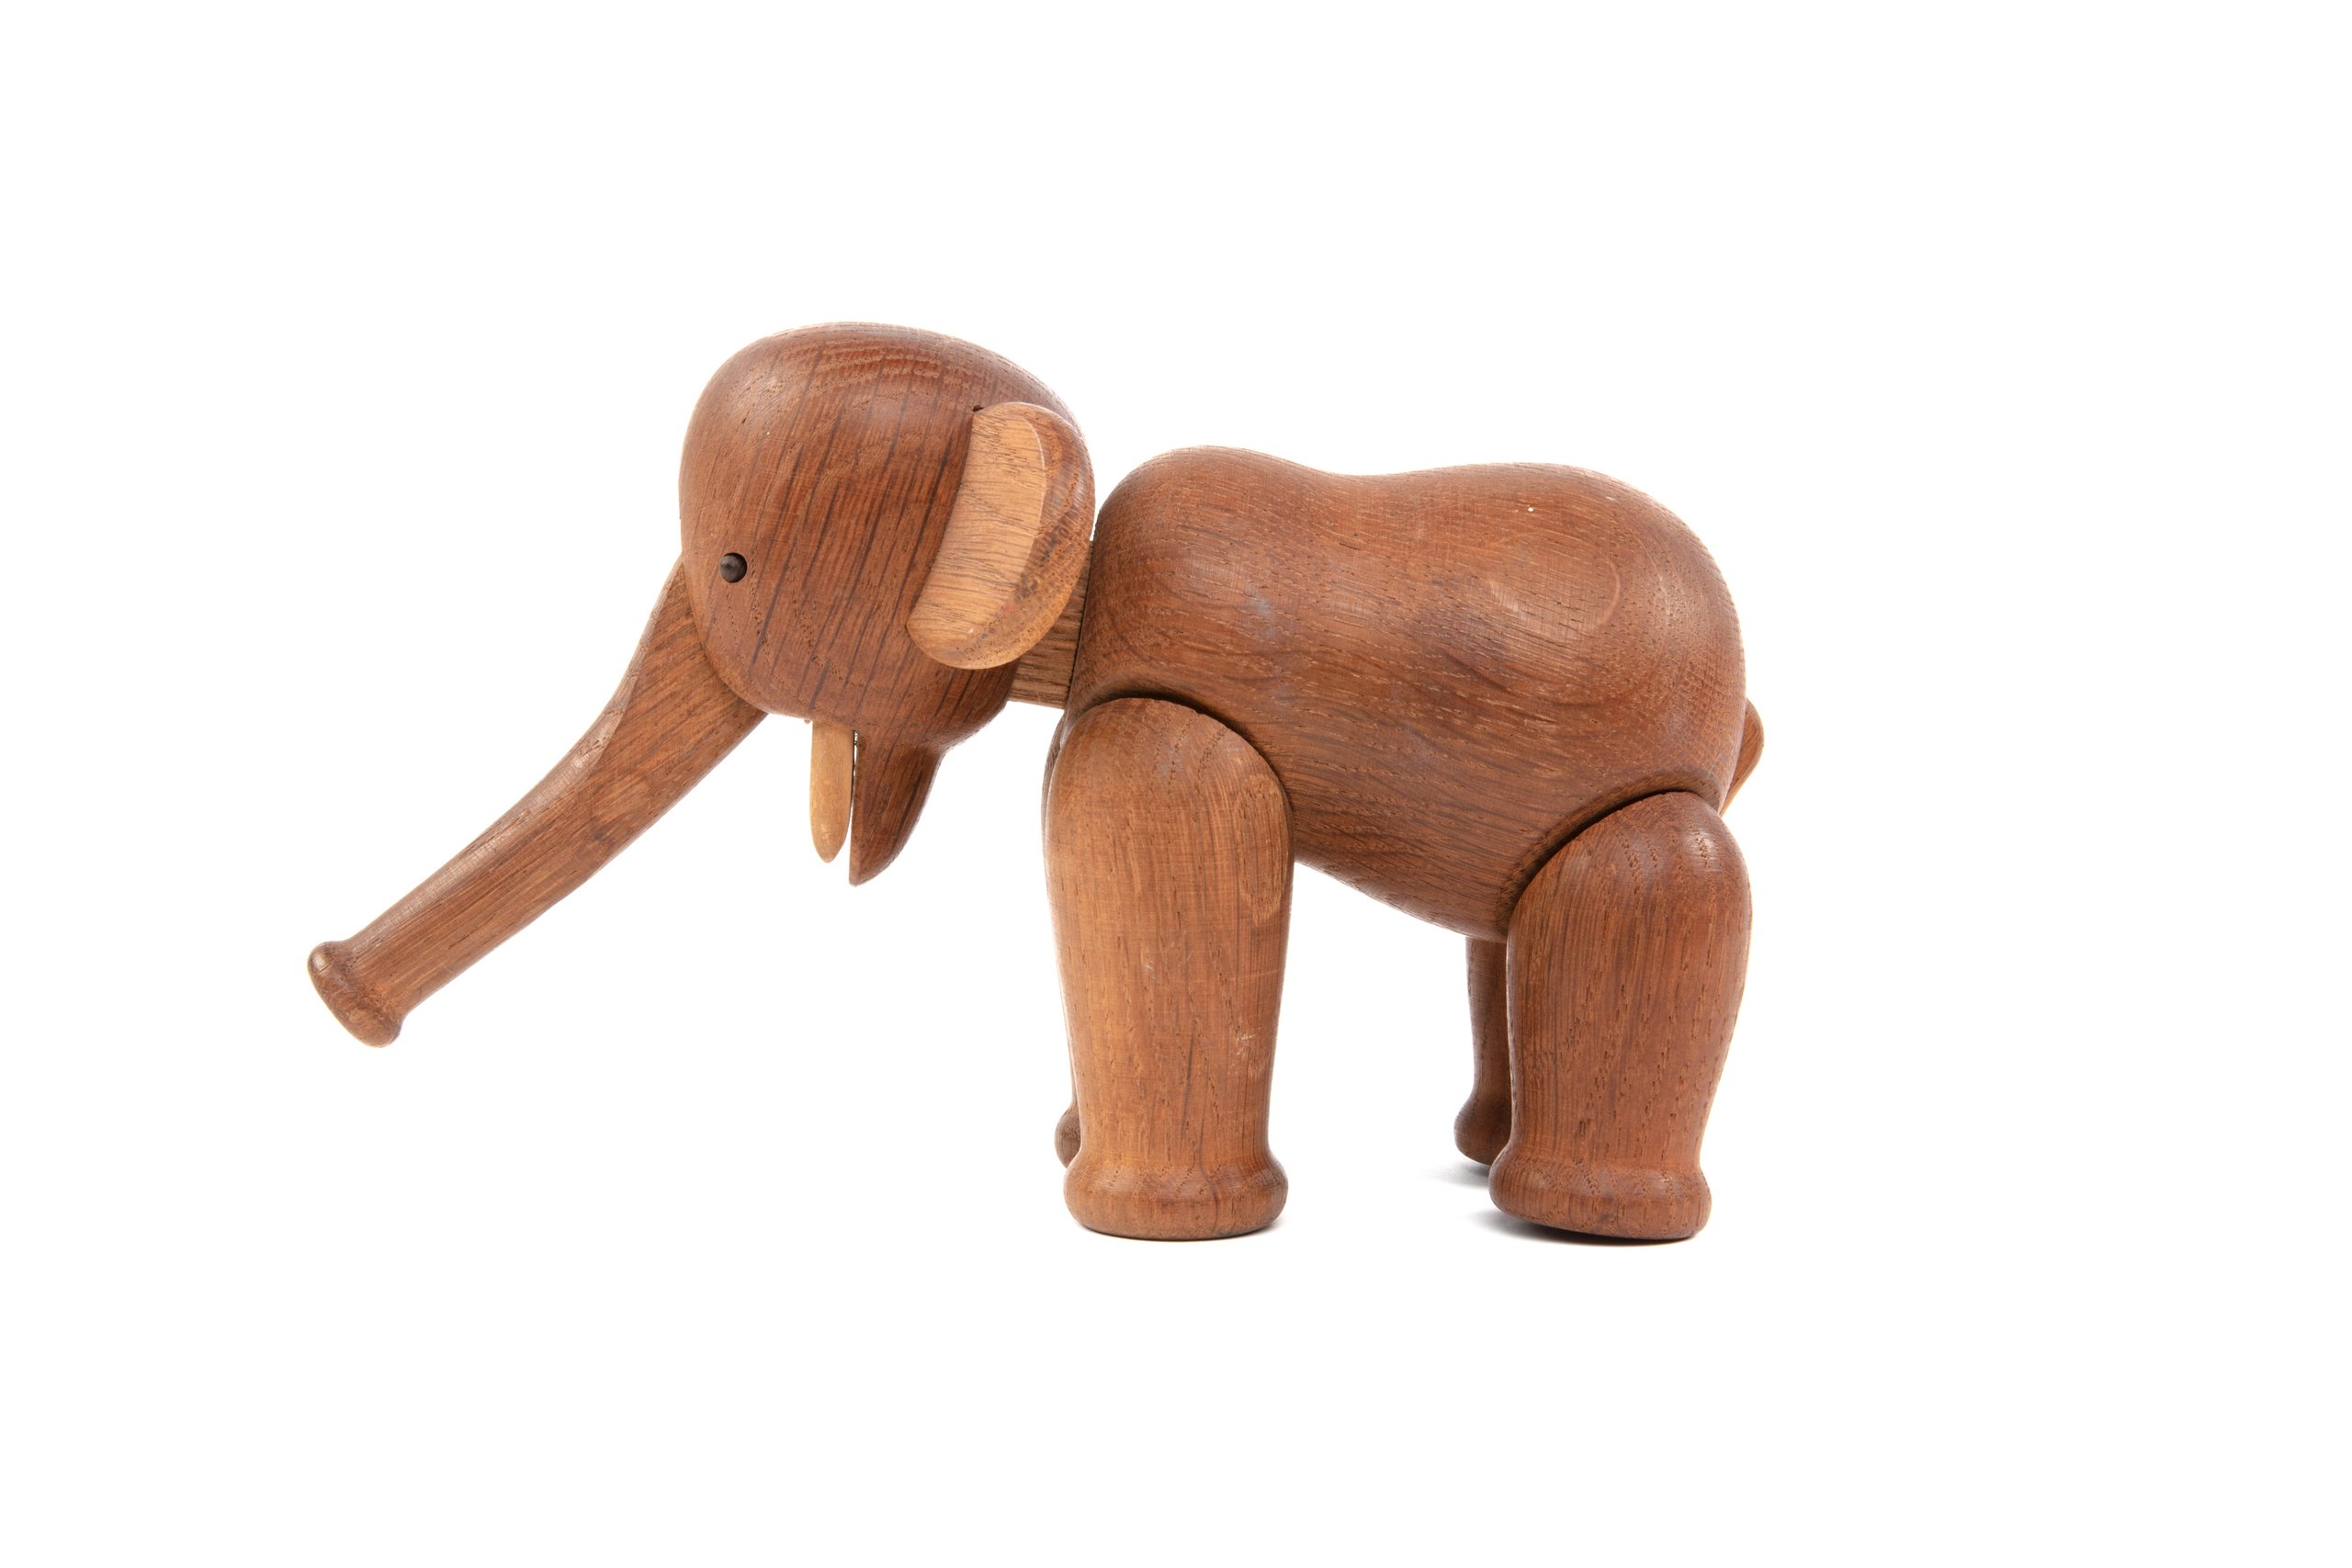 Toy elephant designed by Kay Bojesen